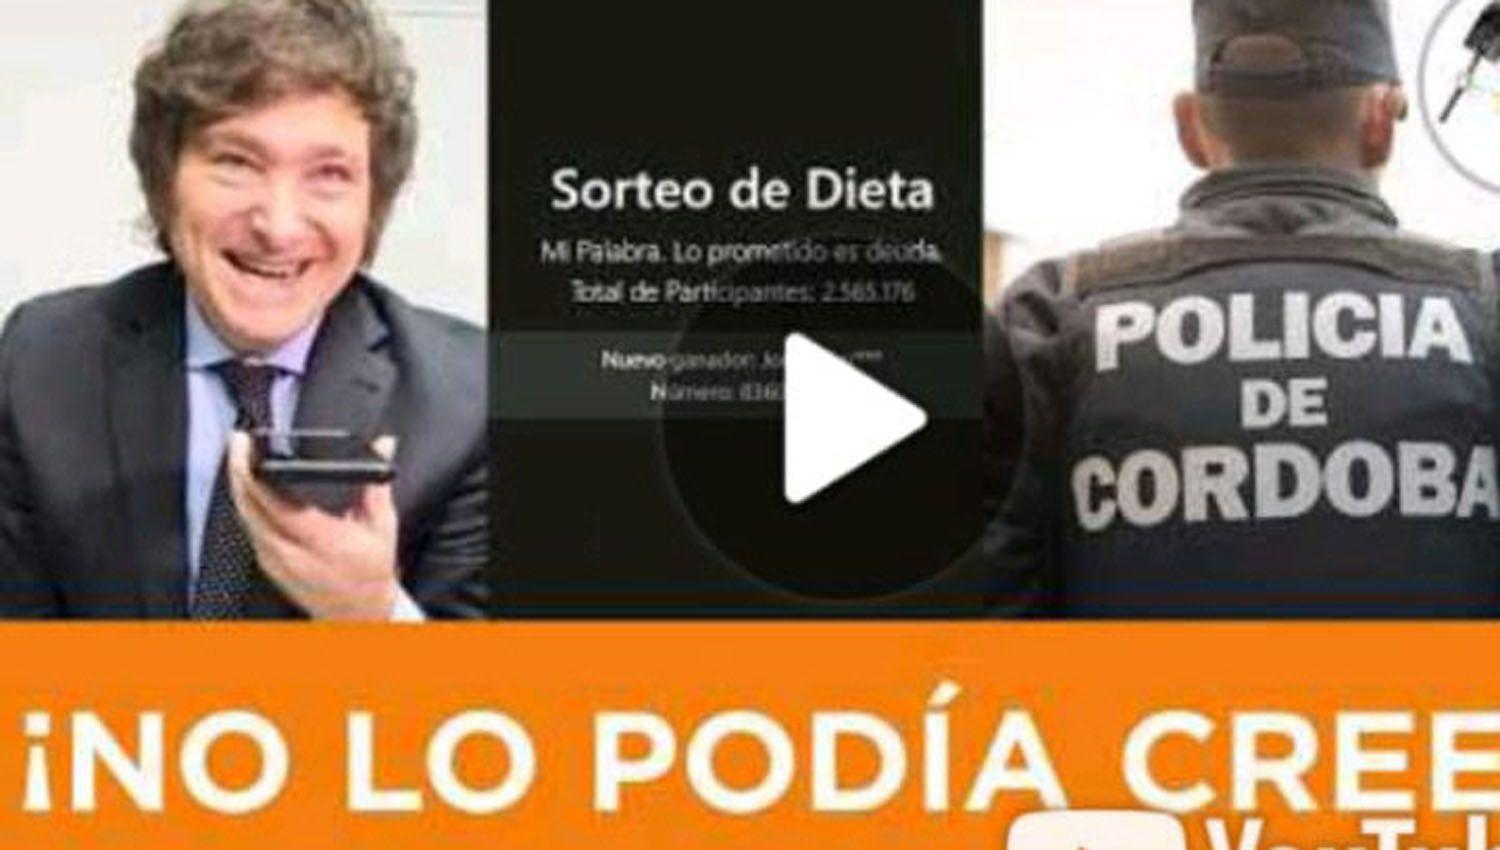 Una alegriacutea desbordante- santiaguentildeo que trabaja de policiacutea en Coacuterdoba ganoacute la dieta del diputado Milei-  38654629